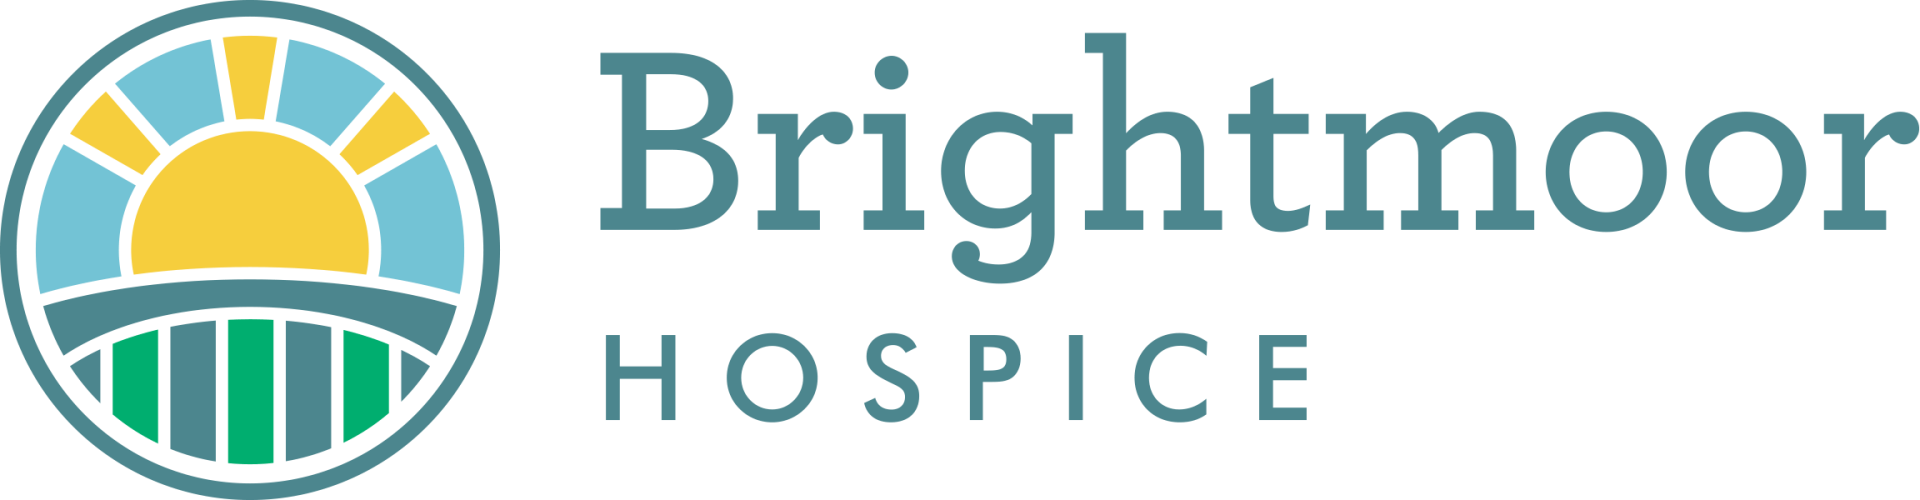 Brightmoor Hospice | Hospice Services | Griffin, GA